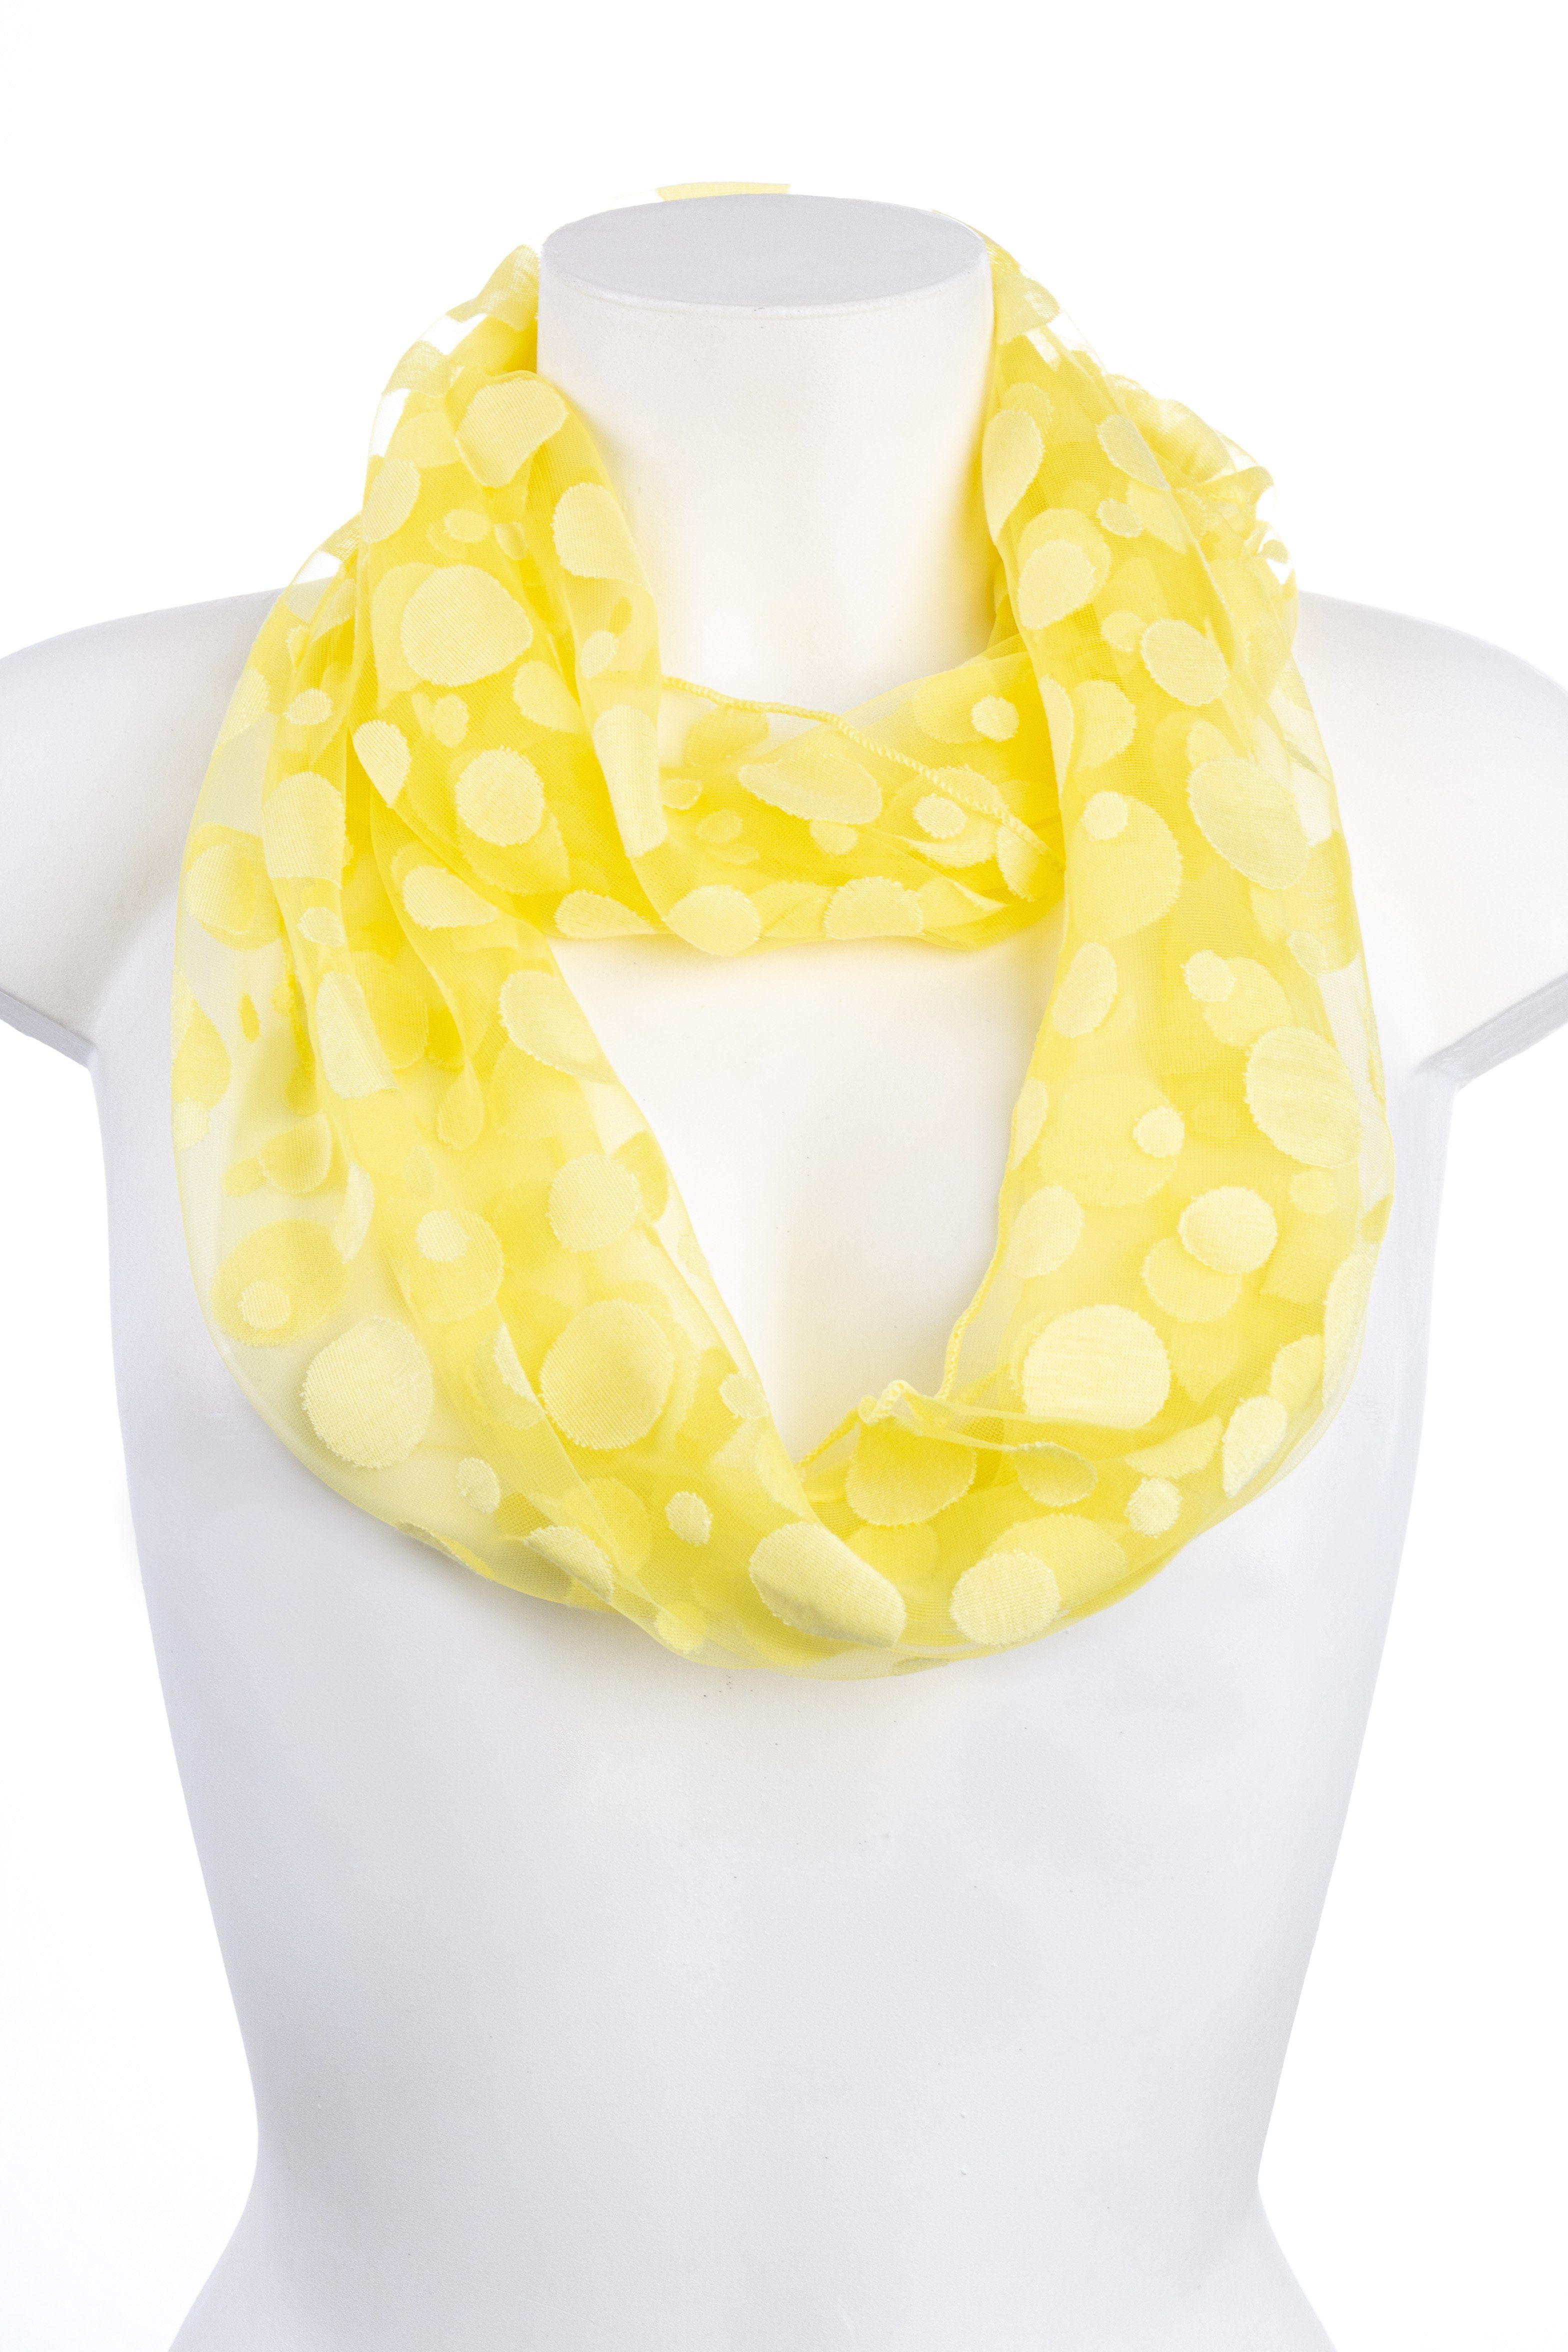 Loop und Loop Optik, Goodman transparenter Schal in Seide, Design Baumwolle Viscose aus Gelb Punkte